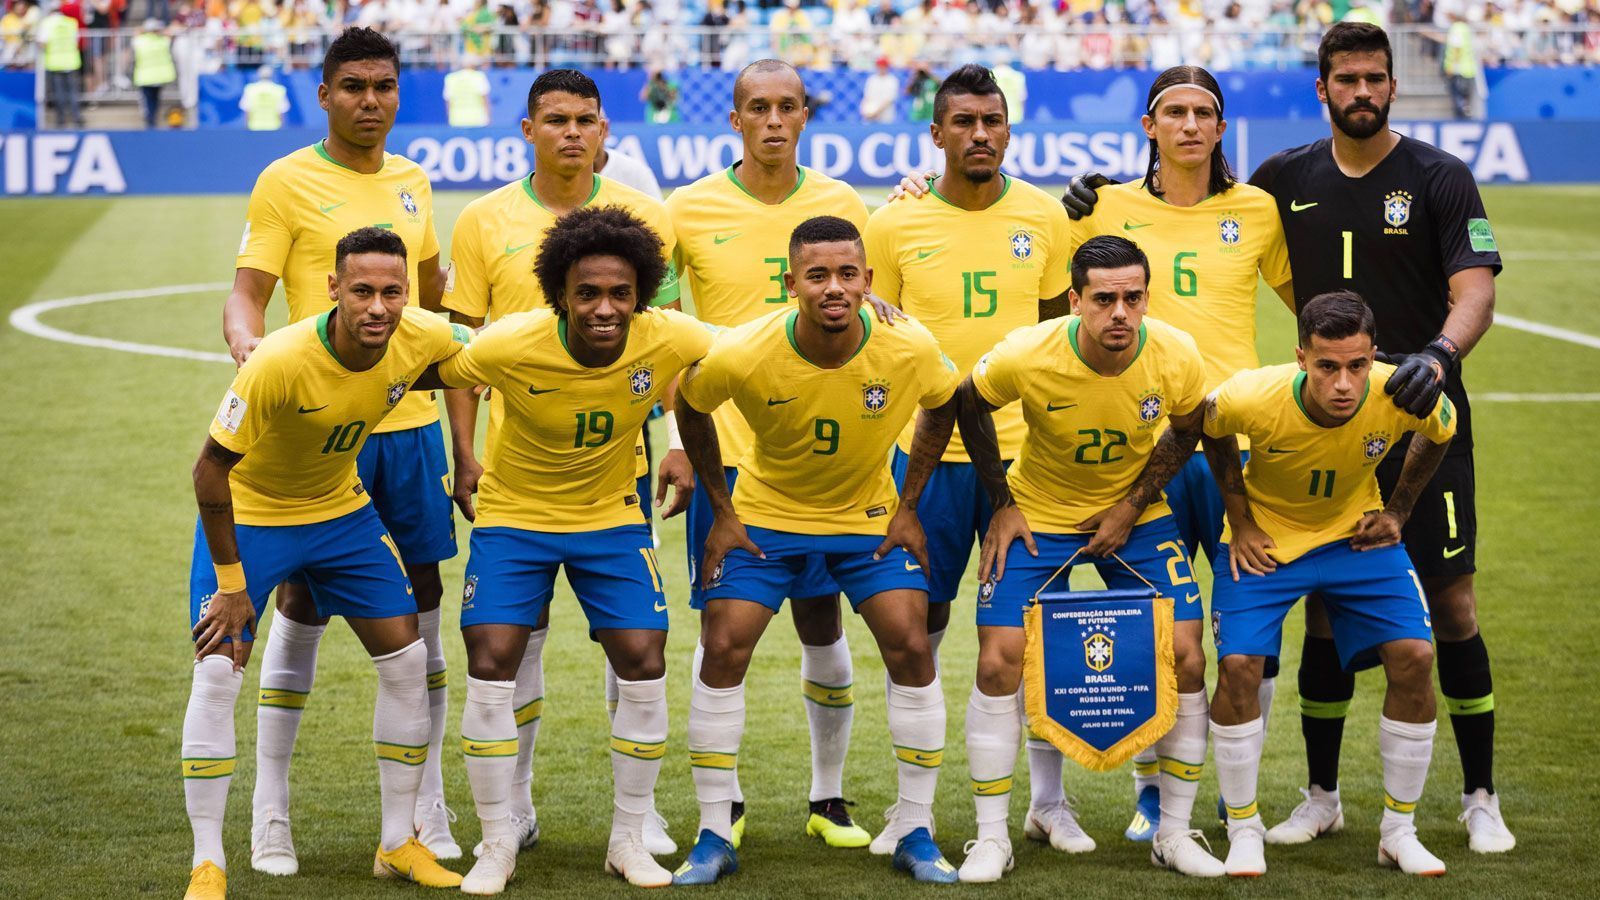 
                <strong>Brasilien gegen Mexiko in der Einzelkritik</strong><br>
                Brasilien steht nach einem 2:0 gegen Mexiko im Viertelfinale der WM. Wir haben Neymar und Co. benotet.
              